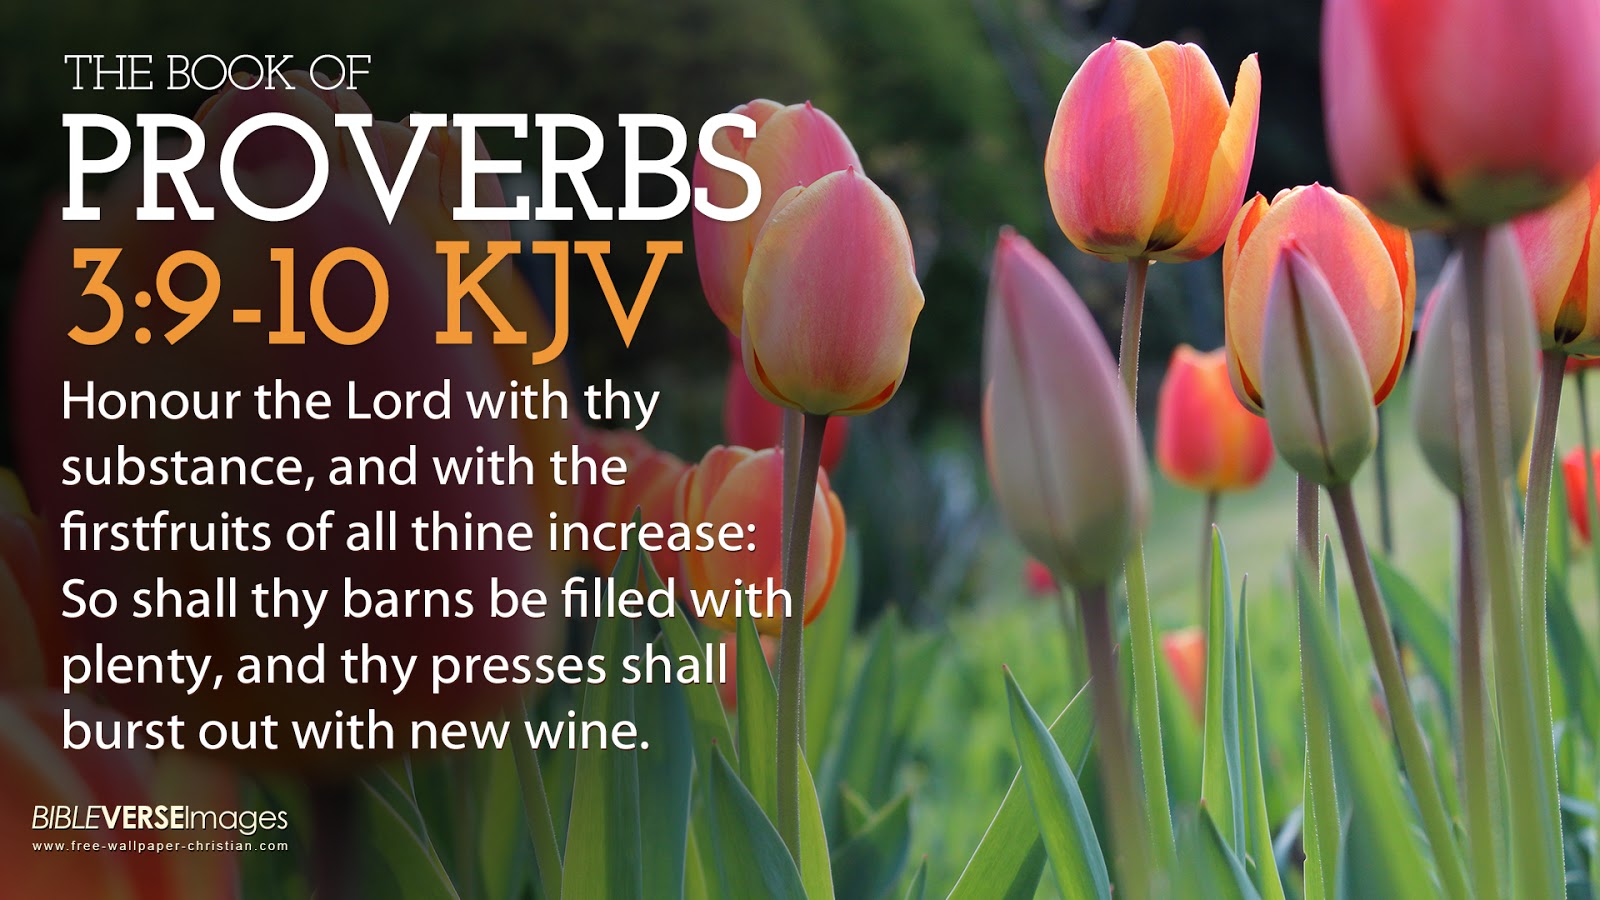 Bible Verse Wallpaper proverbs 3 9 10 King James Versionjpg